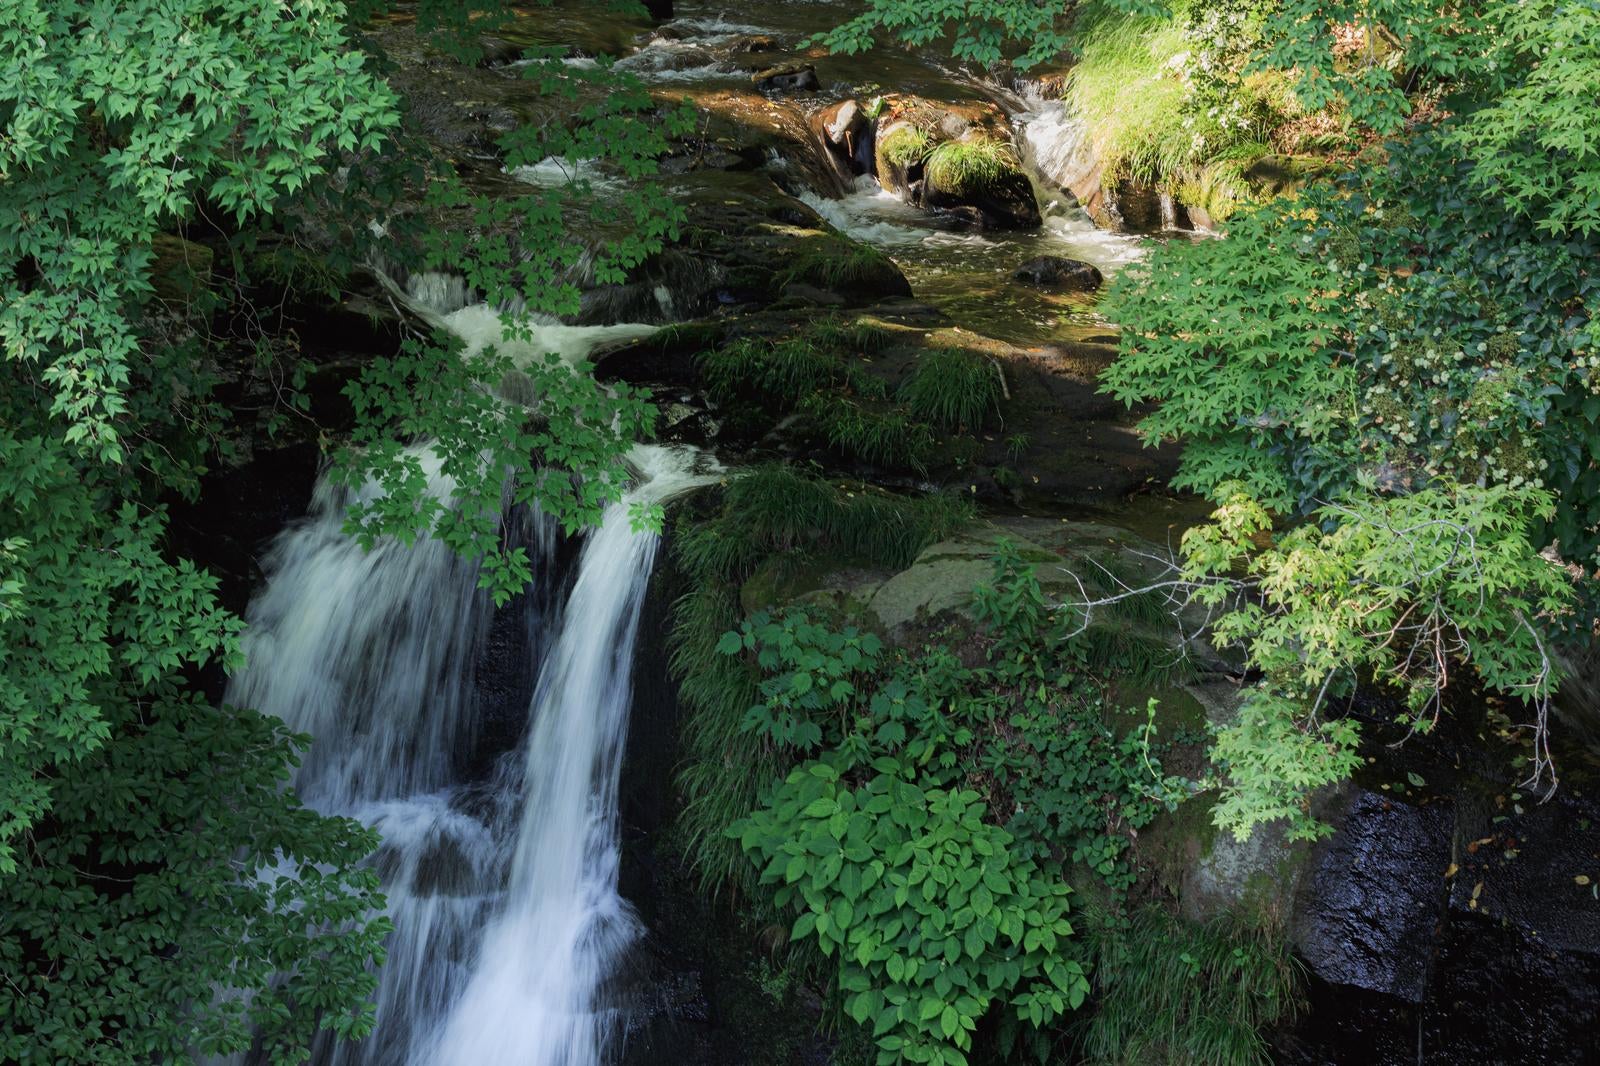 「天栄村の静寂な美、明神滝の息をのむ美しさ」の写真